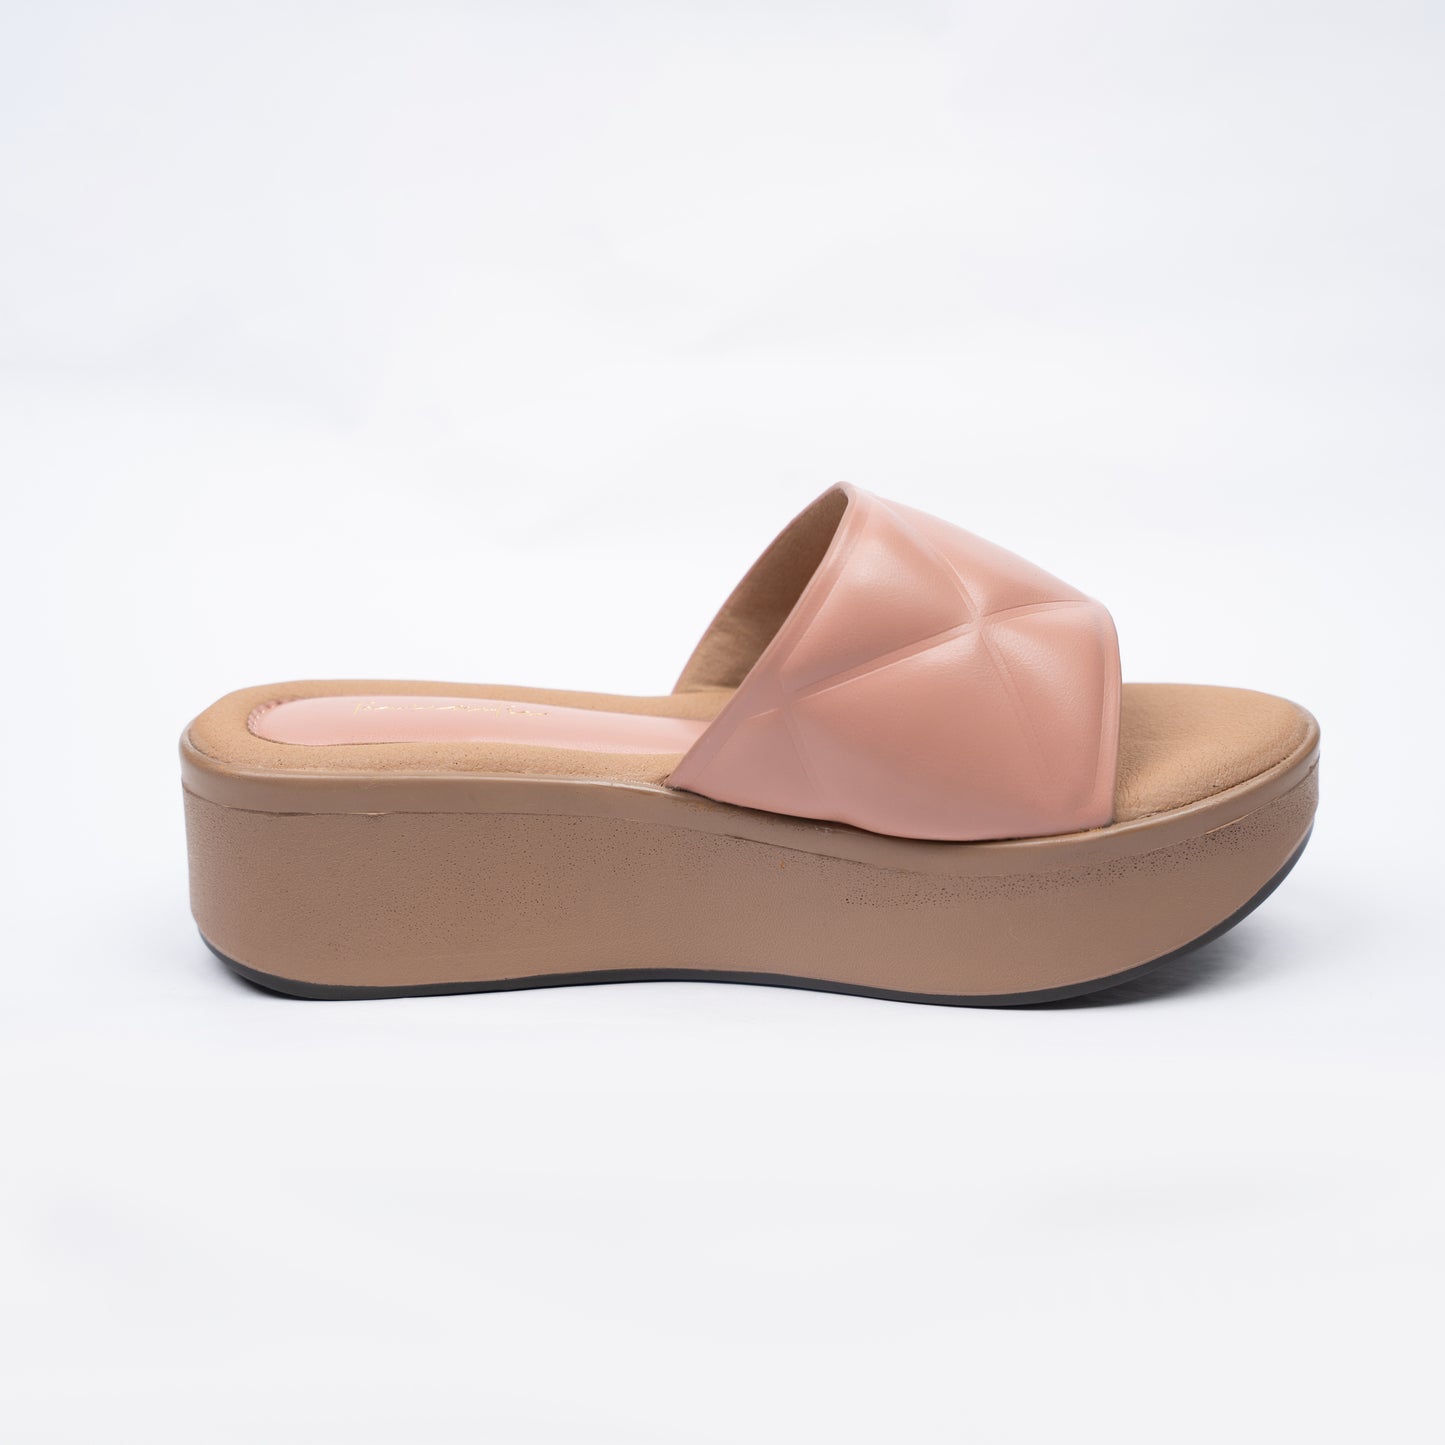 Mista flatform in Peach heel sandals